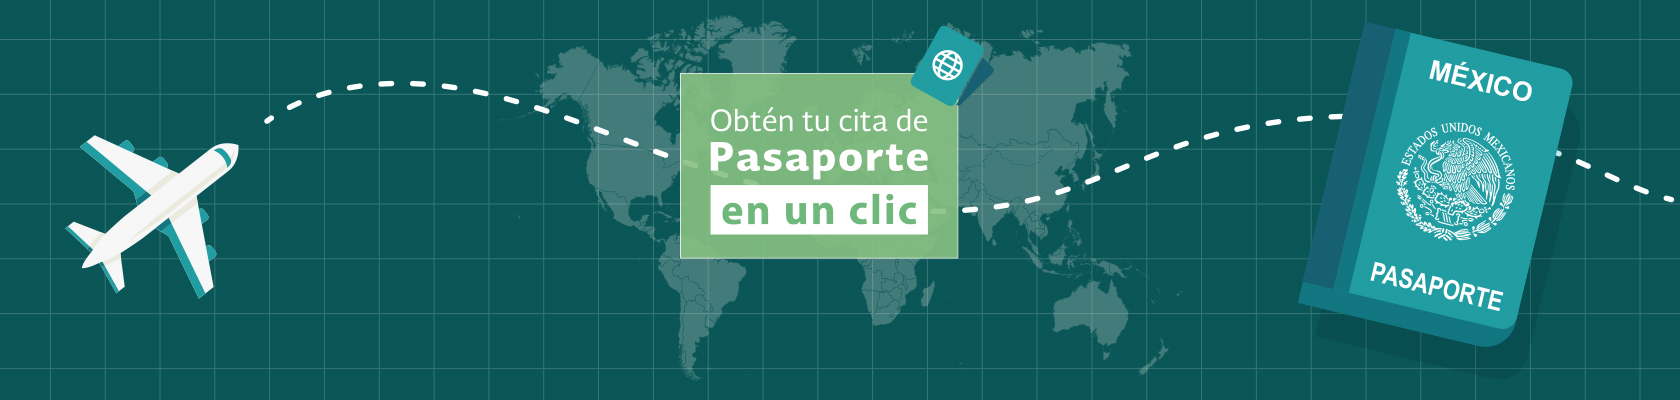 SRE y WhatsApp anuncian nueva modalidad para agendar citas de pasaportes de manera eficiente y segura